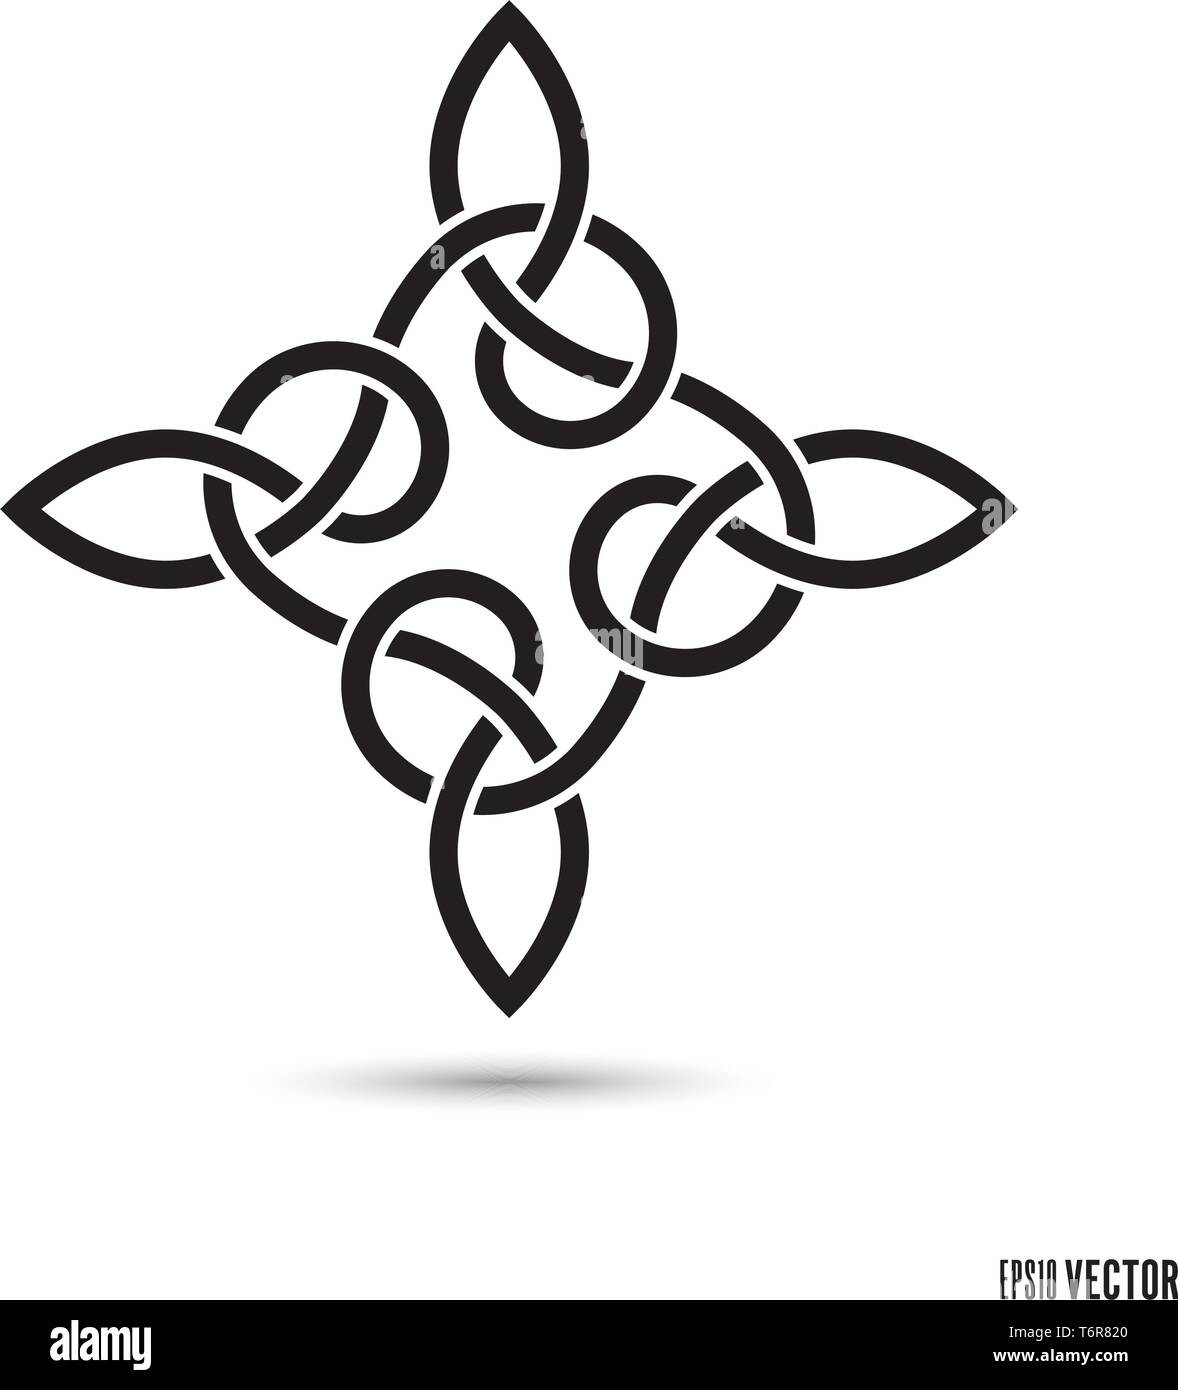 Noeud celtique, symbole entrelacés rubans sans fin vector illustration Illustration de Vecteur